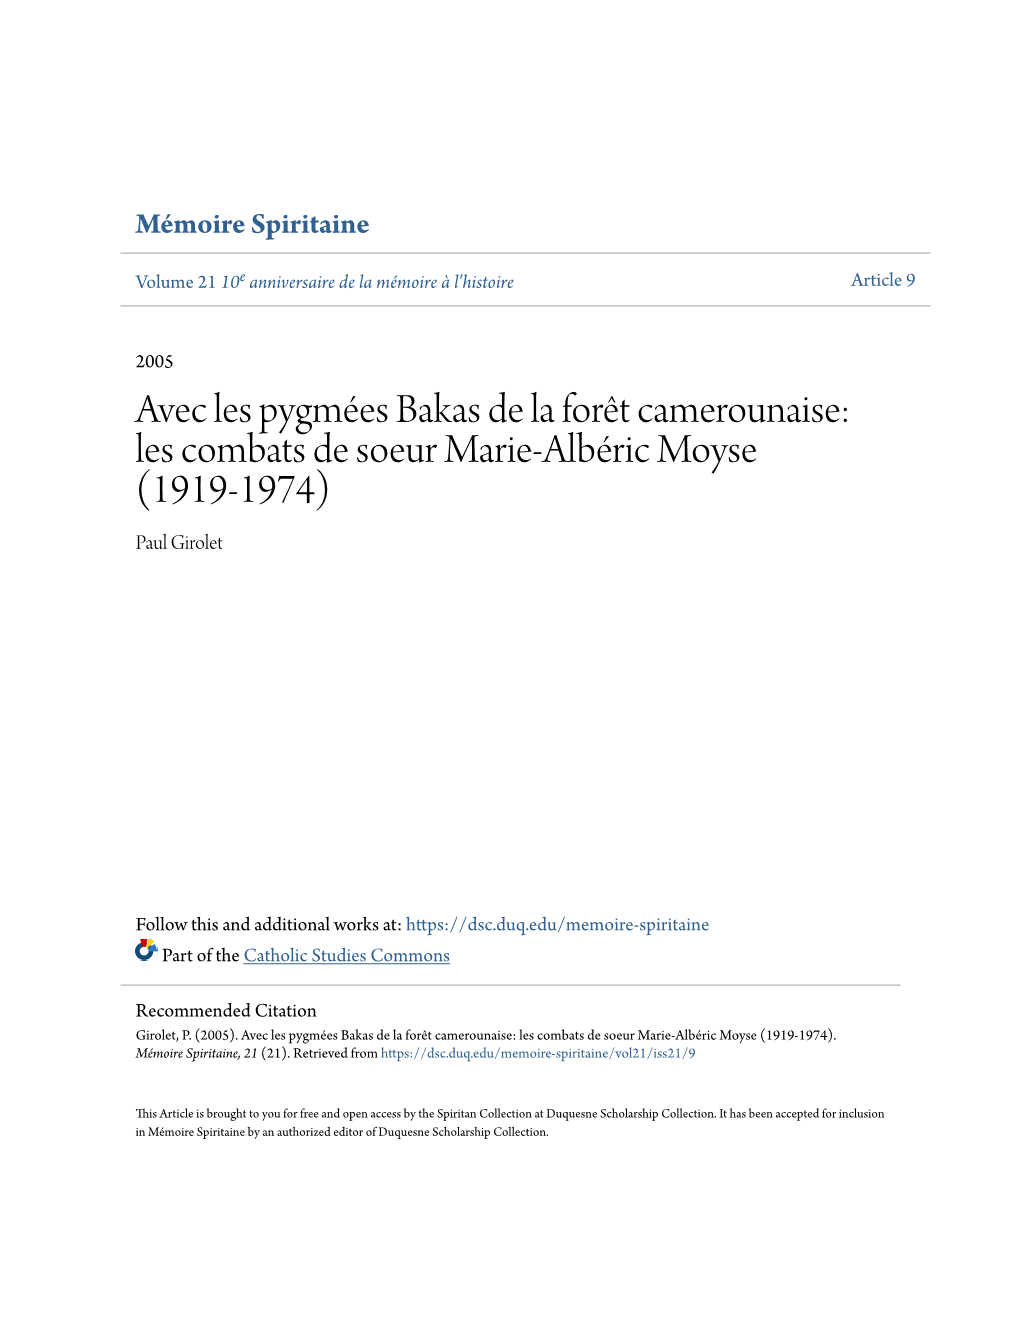 Avec Les Pygmées Bakas De La Forêt Camerounaise: Les Combats De Soeur Marie-Albéric Moyse (1919-1974) Paul Girolet